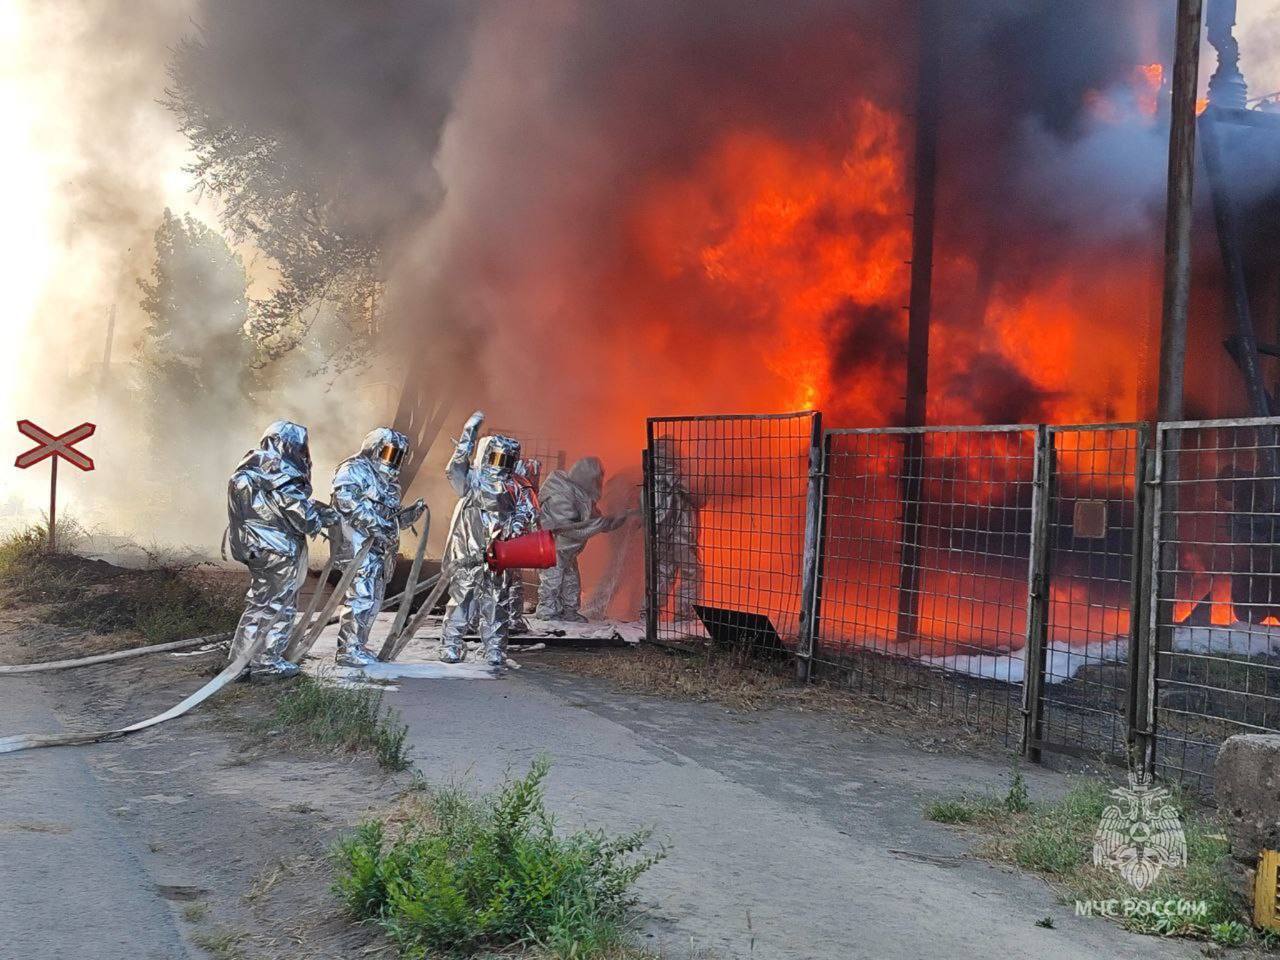 У Волгограді спалахнула потужна пожежа на заводі "Красний Октябрь", піднялася стіна вогню і диму. Відео